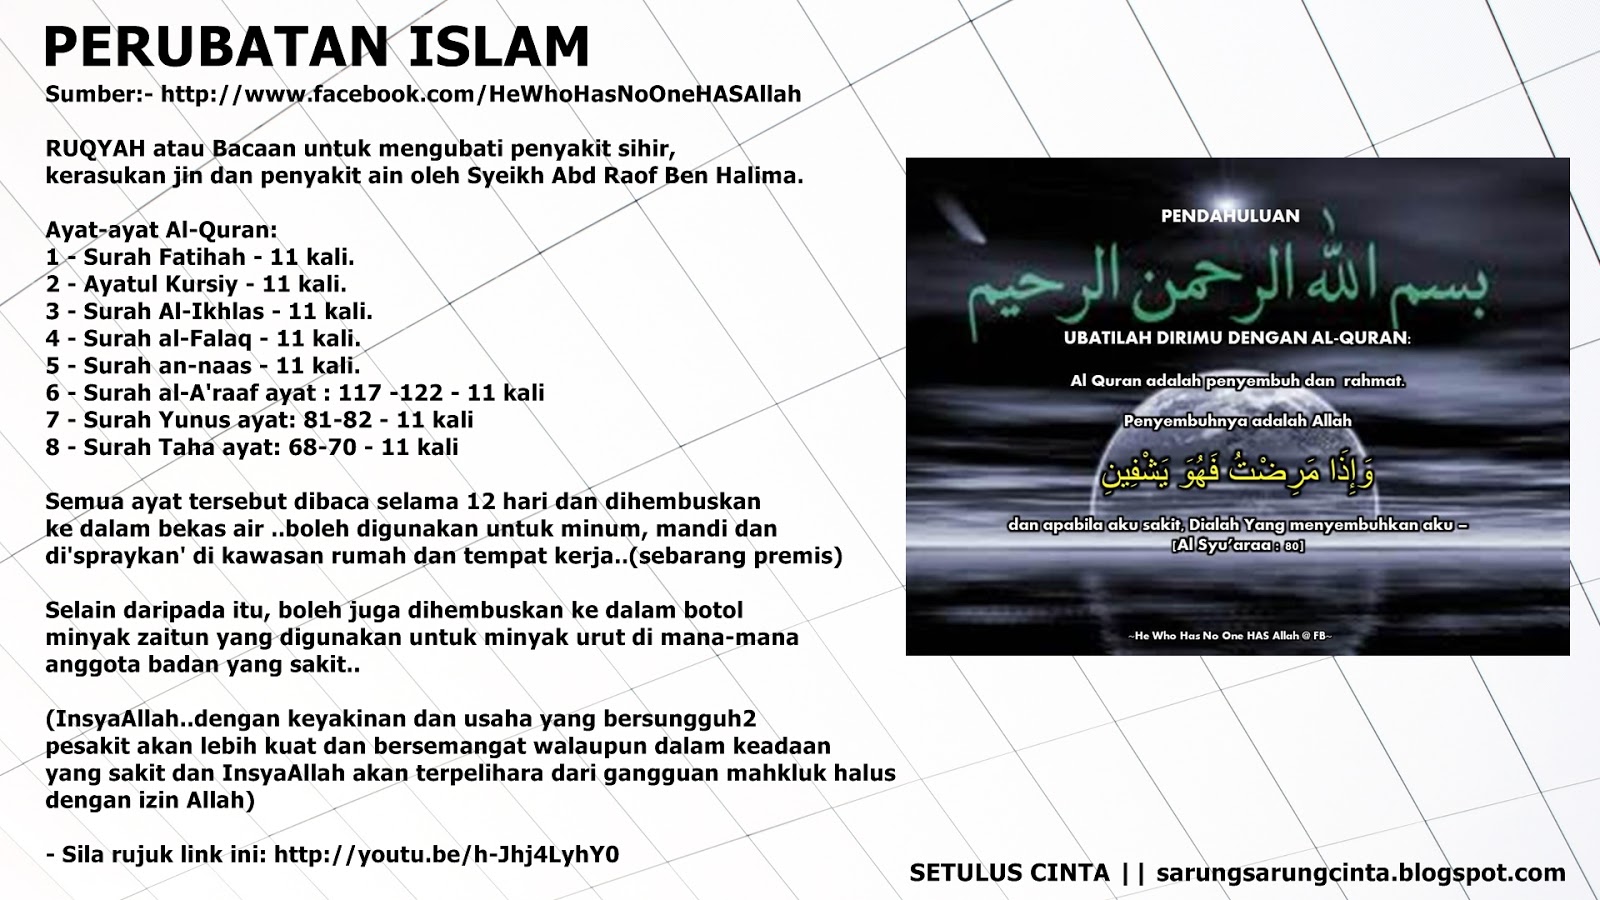 SETULUS CINTA: Perubatan Islam